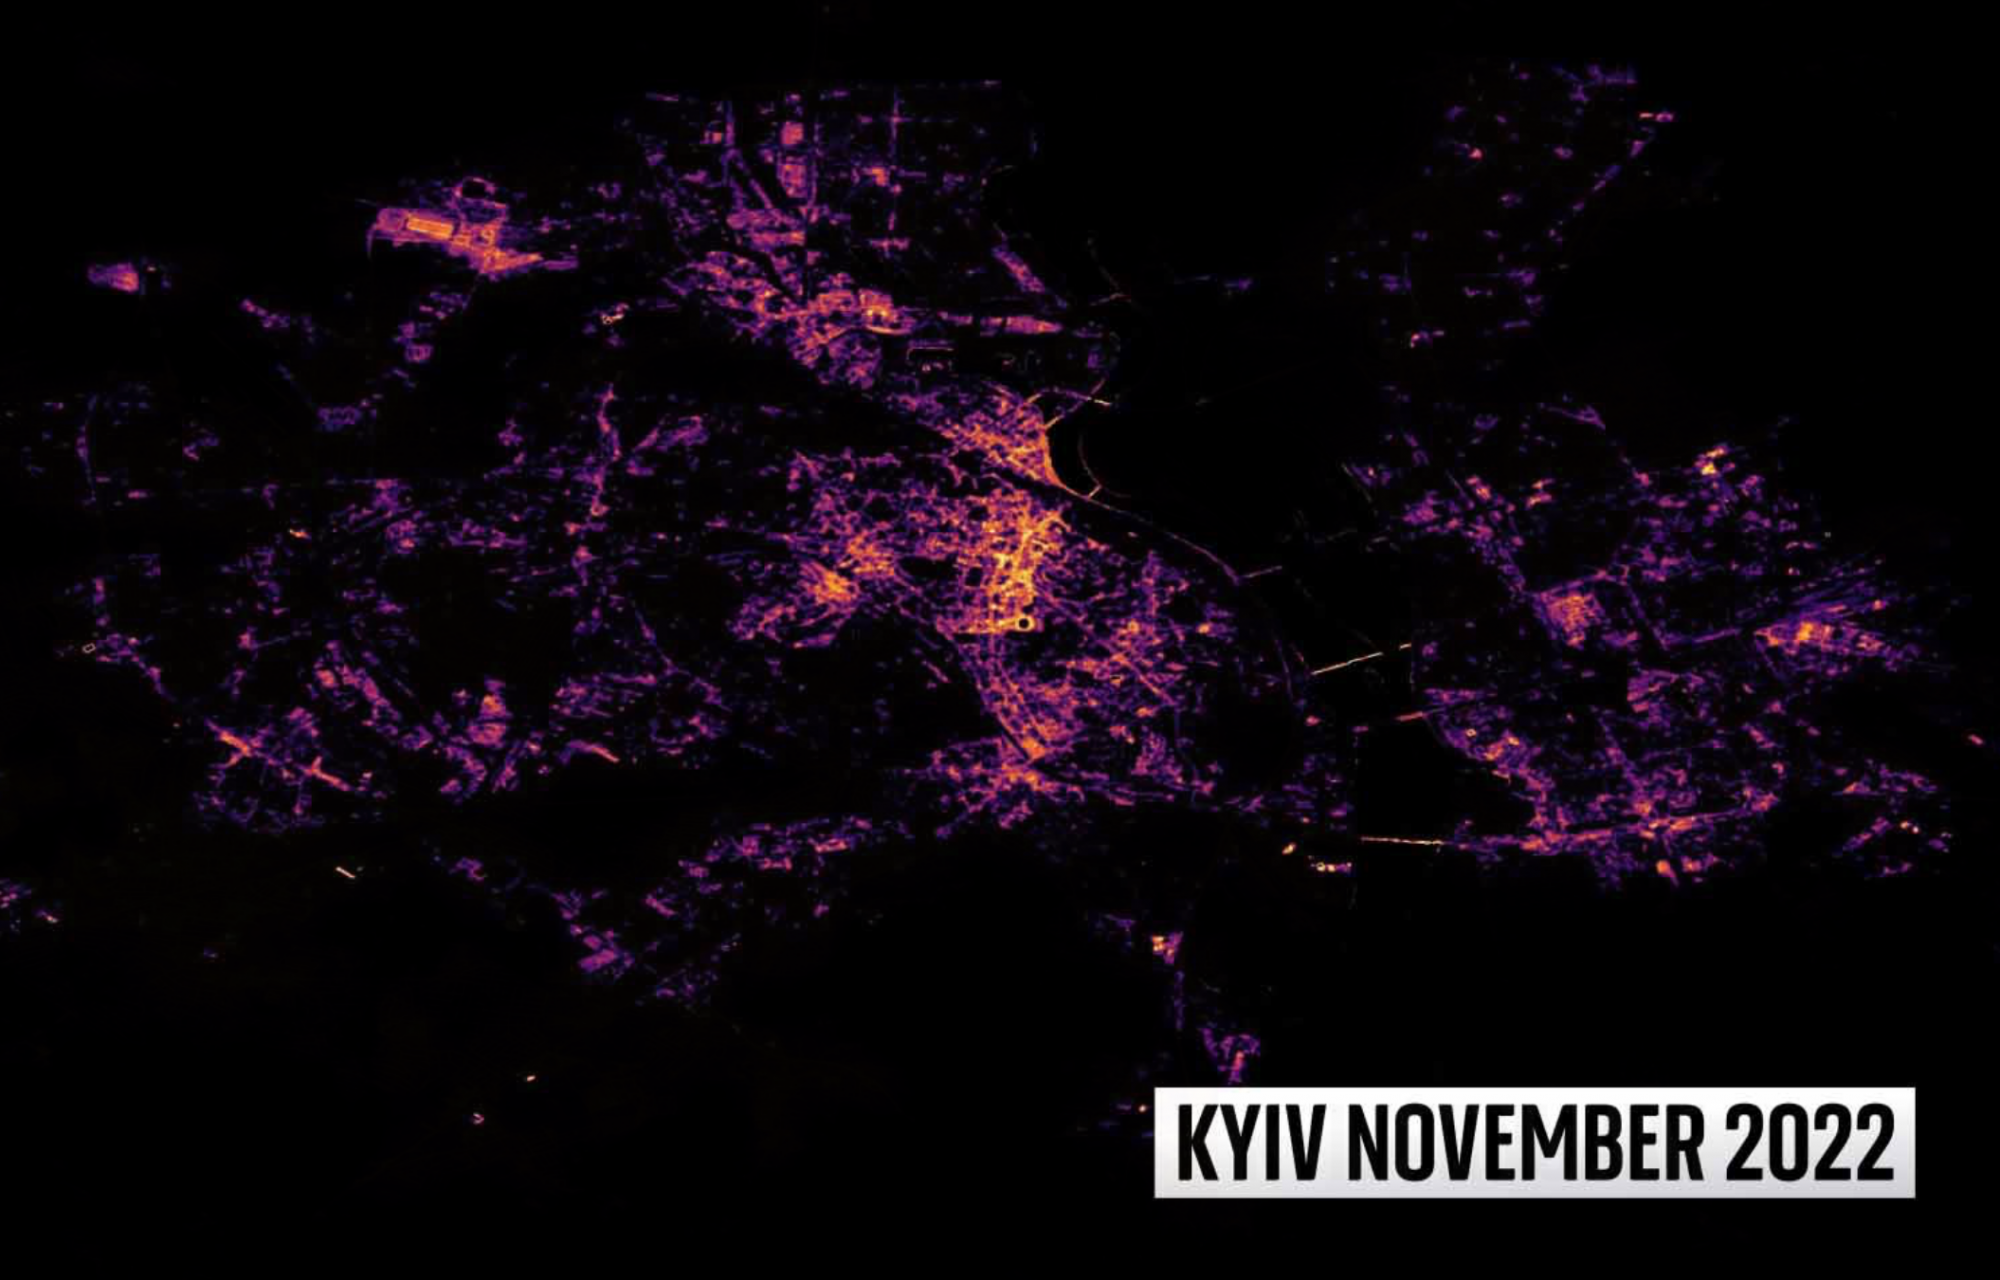 Új NASA-műholdképeken láthatjuk, ahogy Kijev szinte teljesen elsötétült